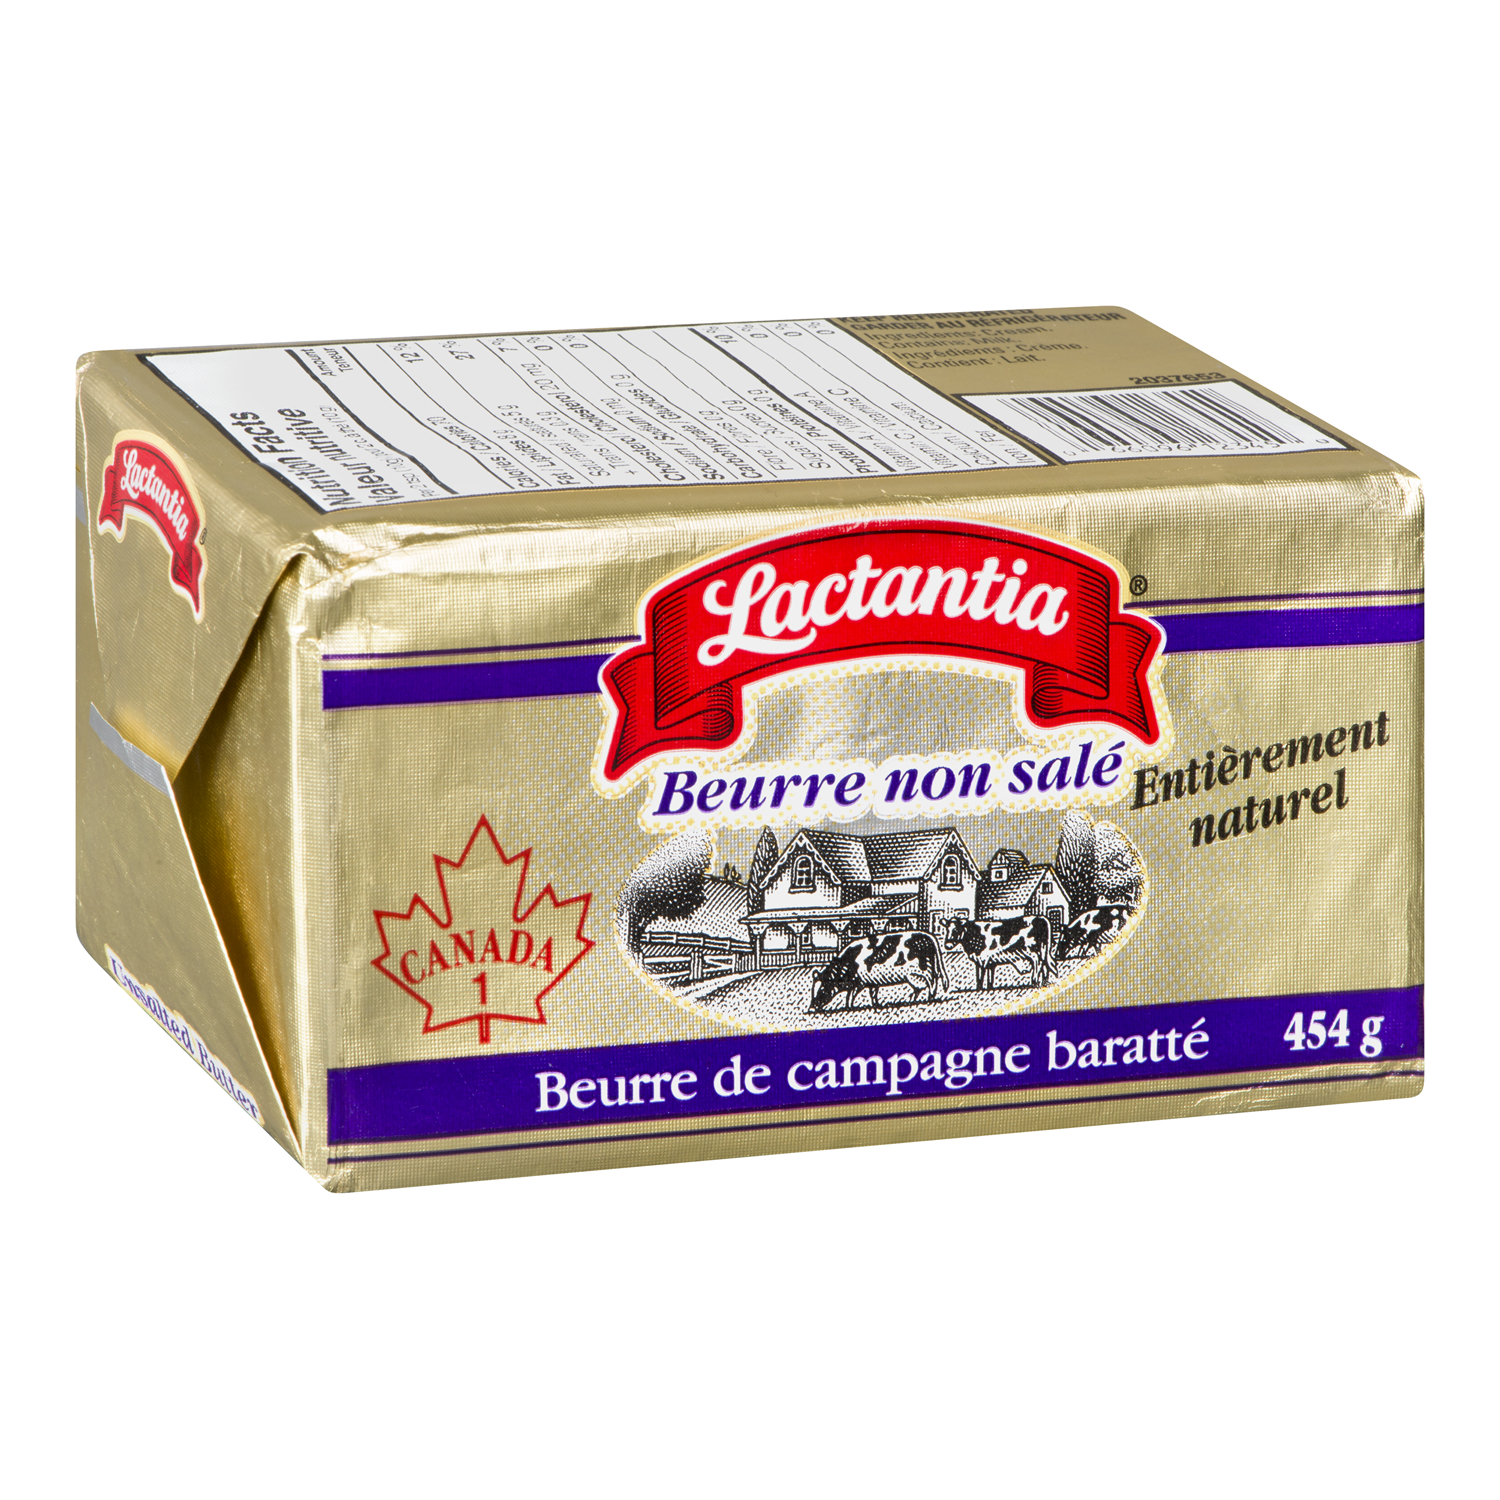 Beurre non salé de campagne baratté 454 g - Beurre